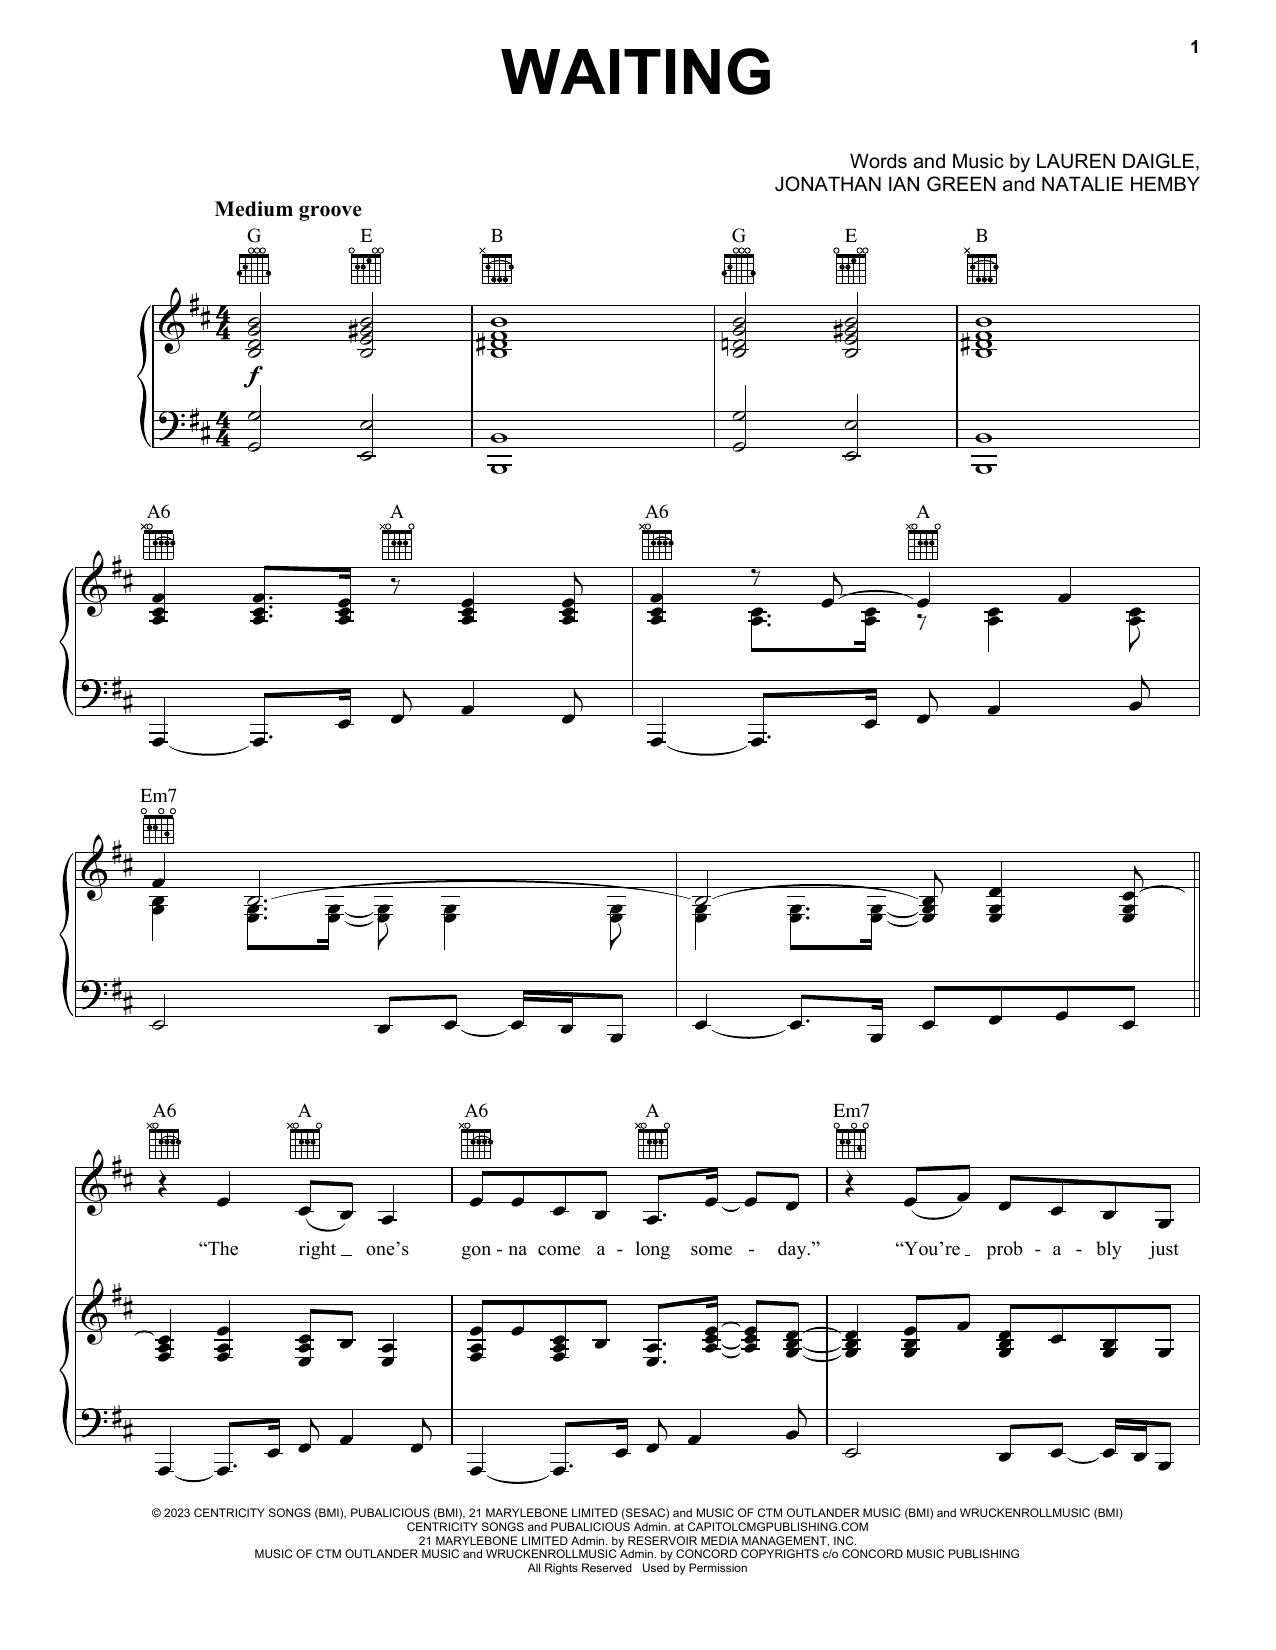 Lauren Daigle Waiting sheet music notes printable PDF score